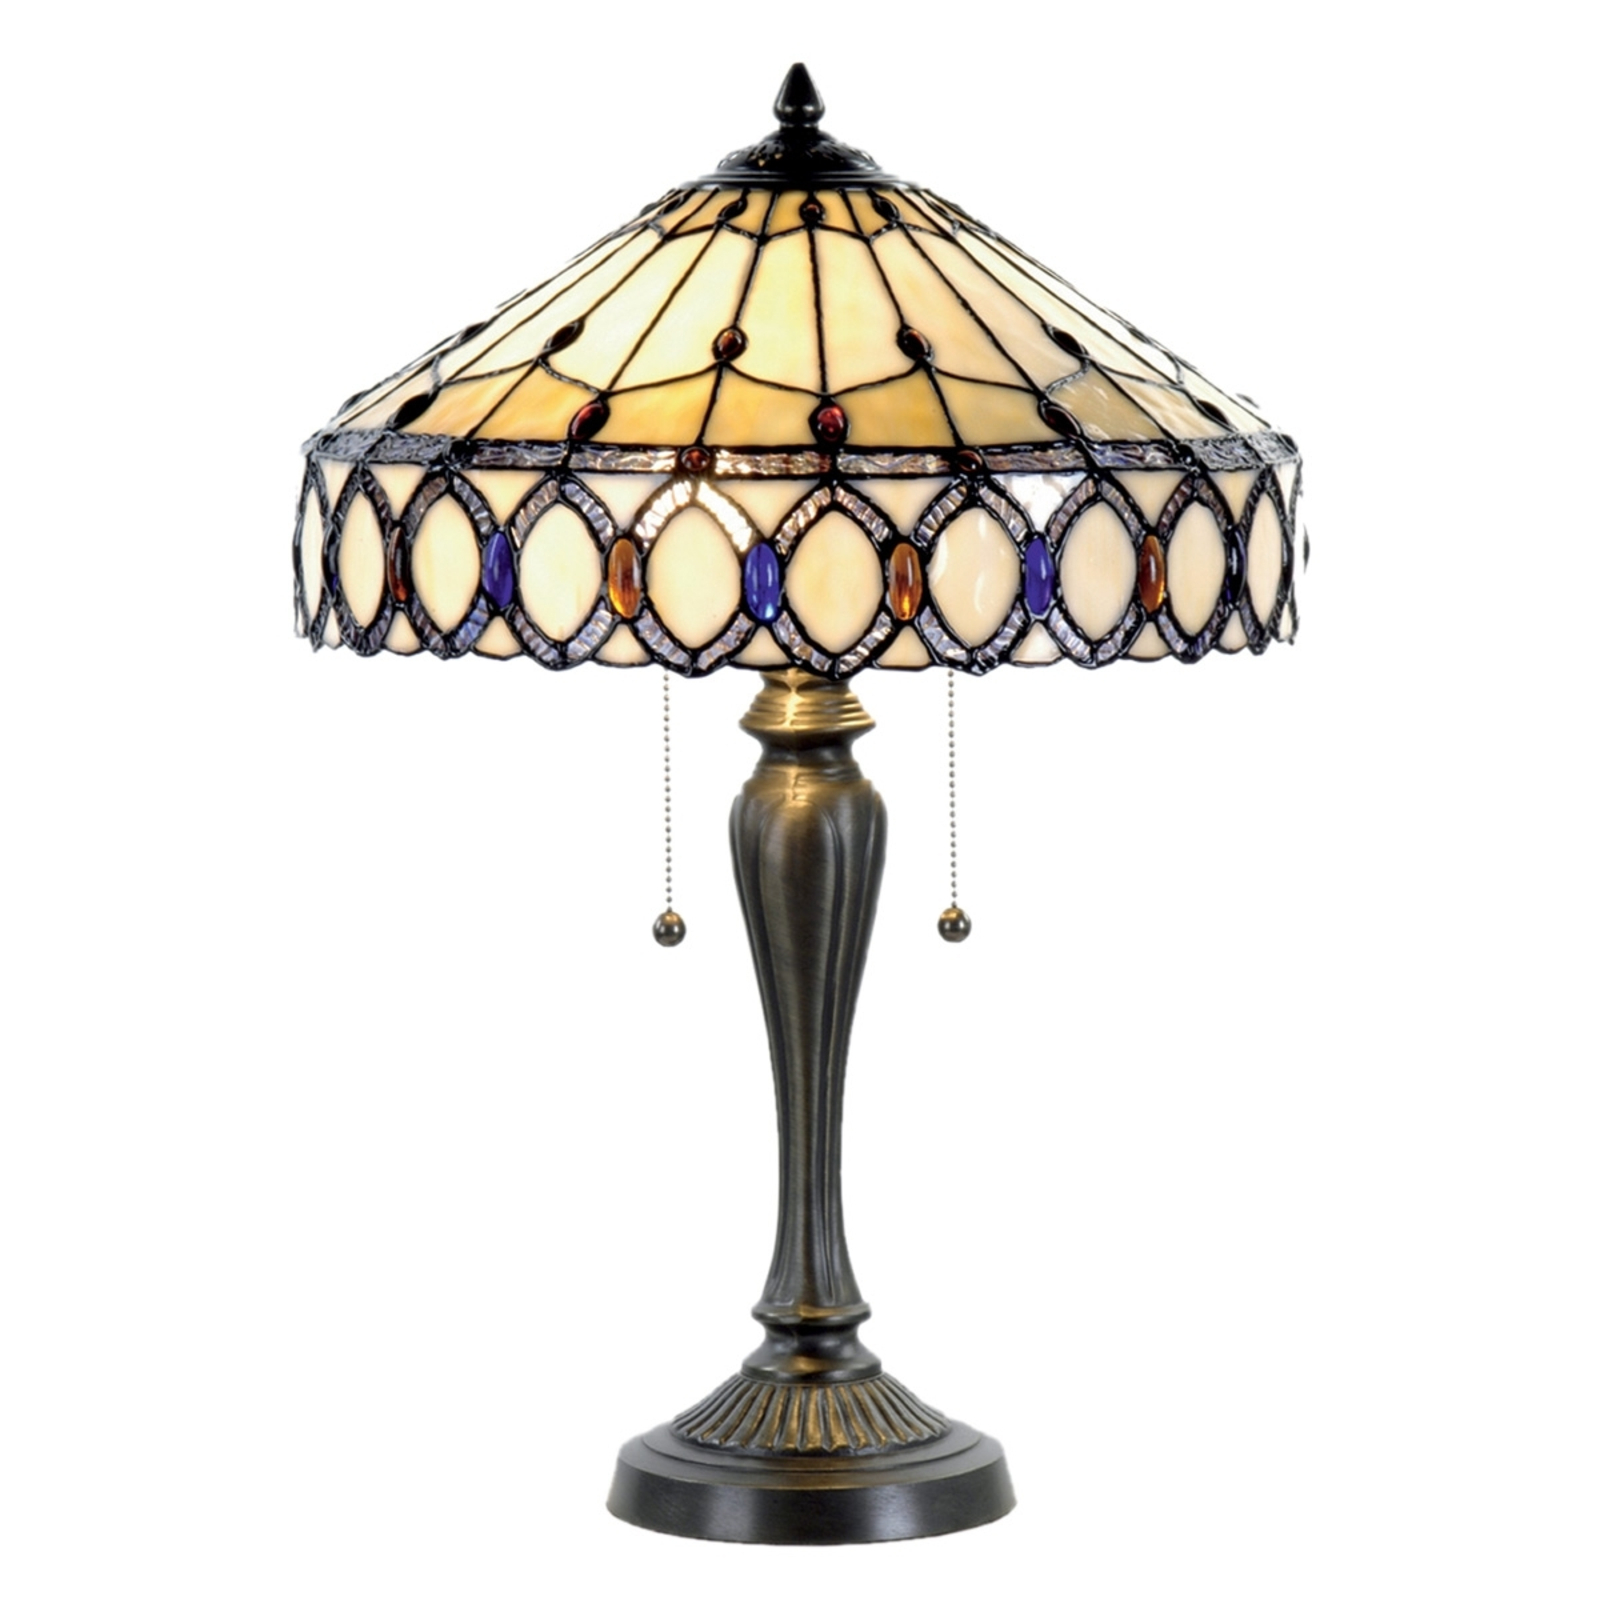 Fiera Tiffany style table lamp